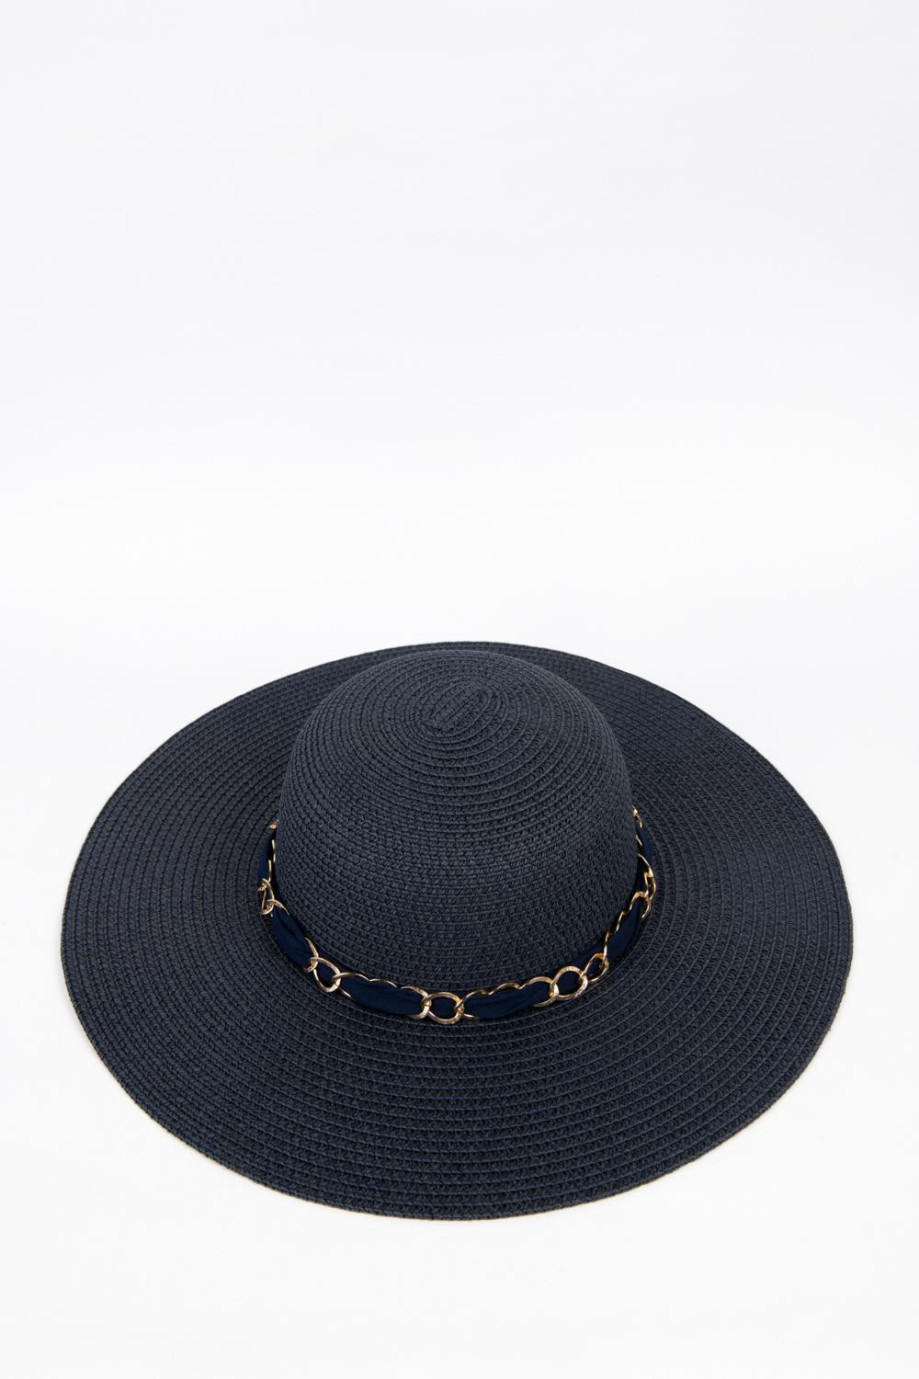 Sombrero de paja azul intenso con lazo y cadena decorativas